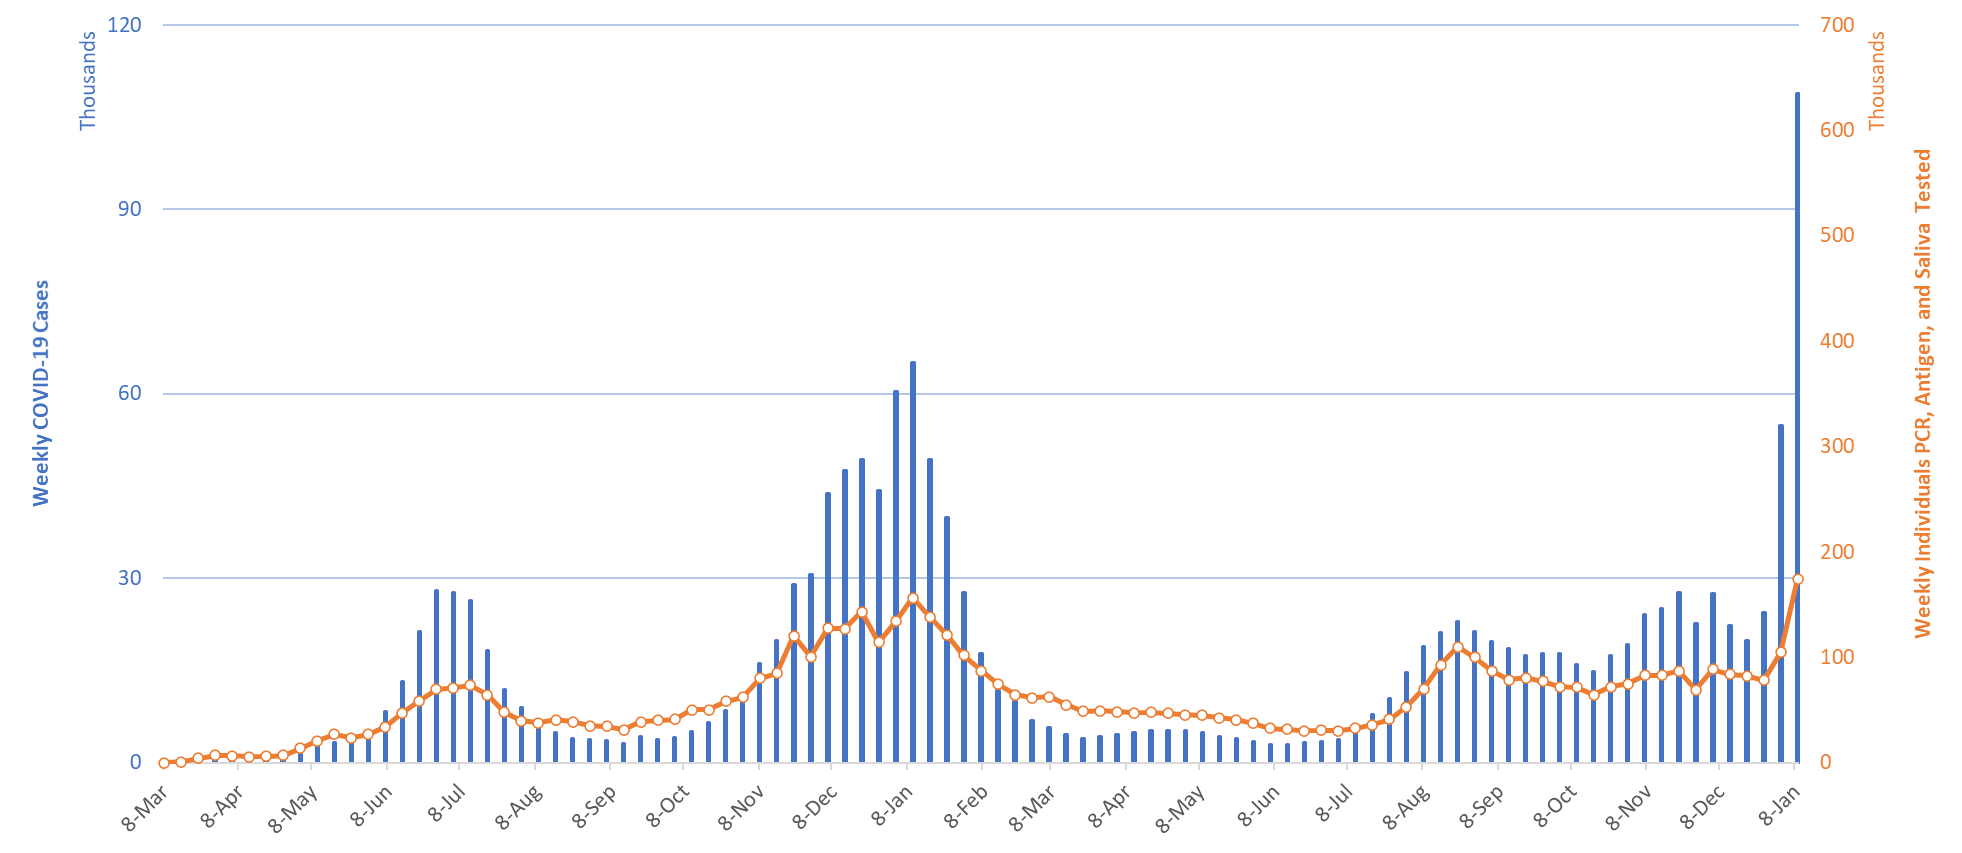 Coronavirus statistics graph